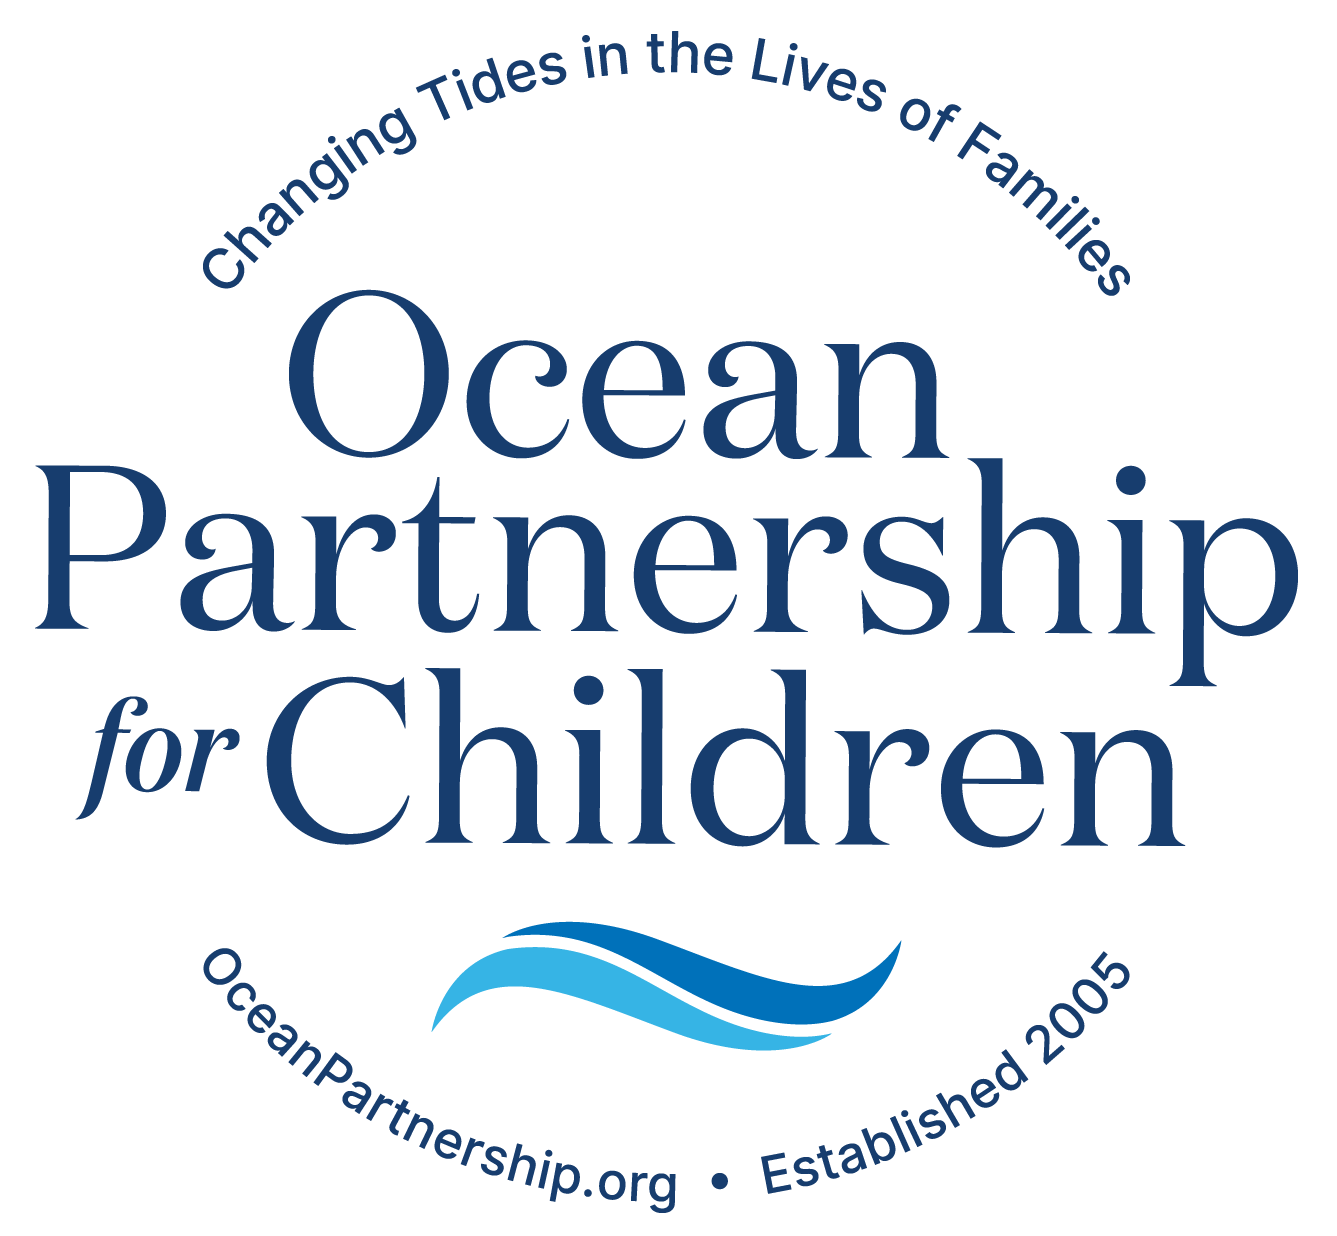 Ocean Partnership for Children logo